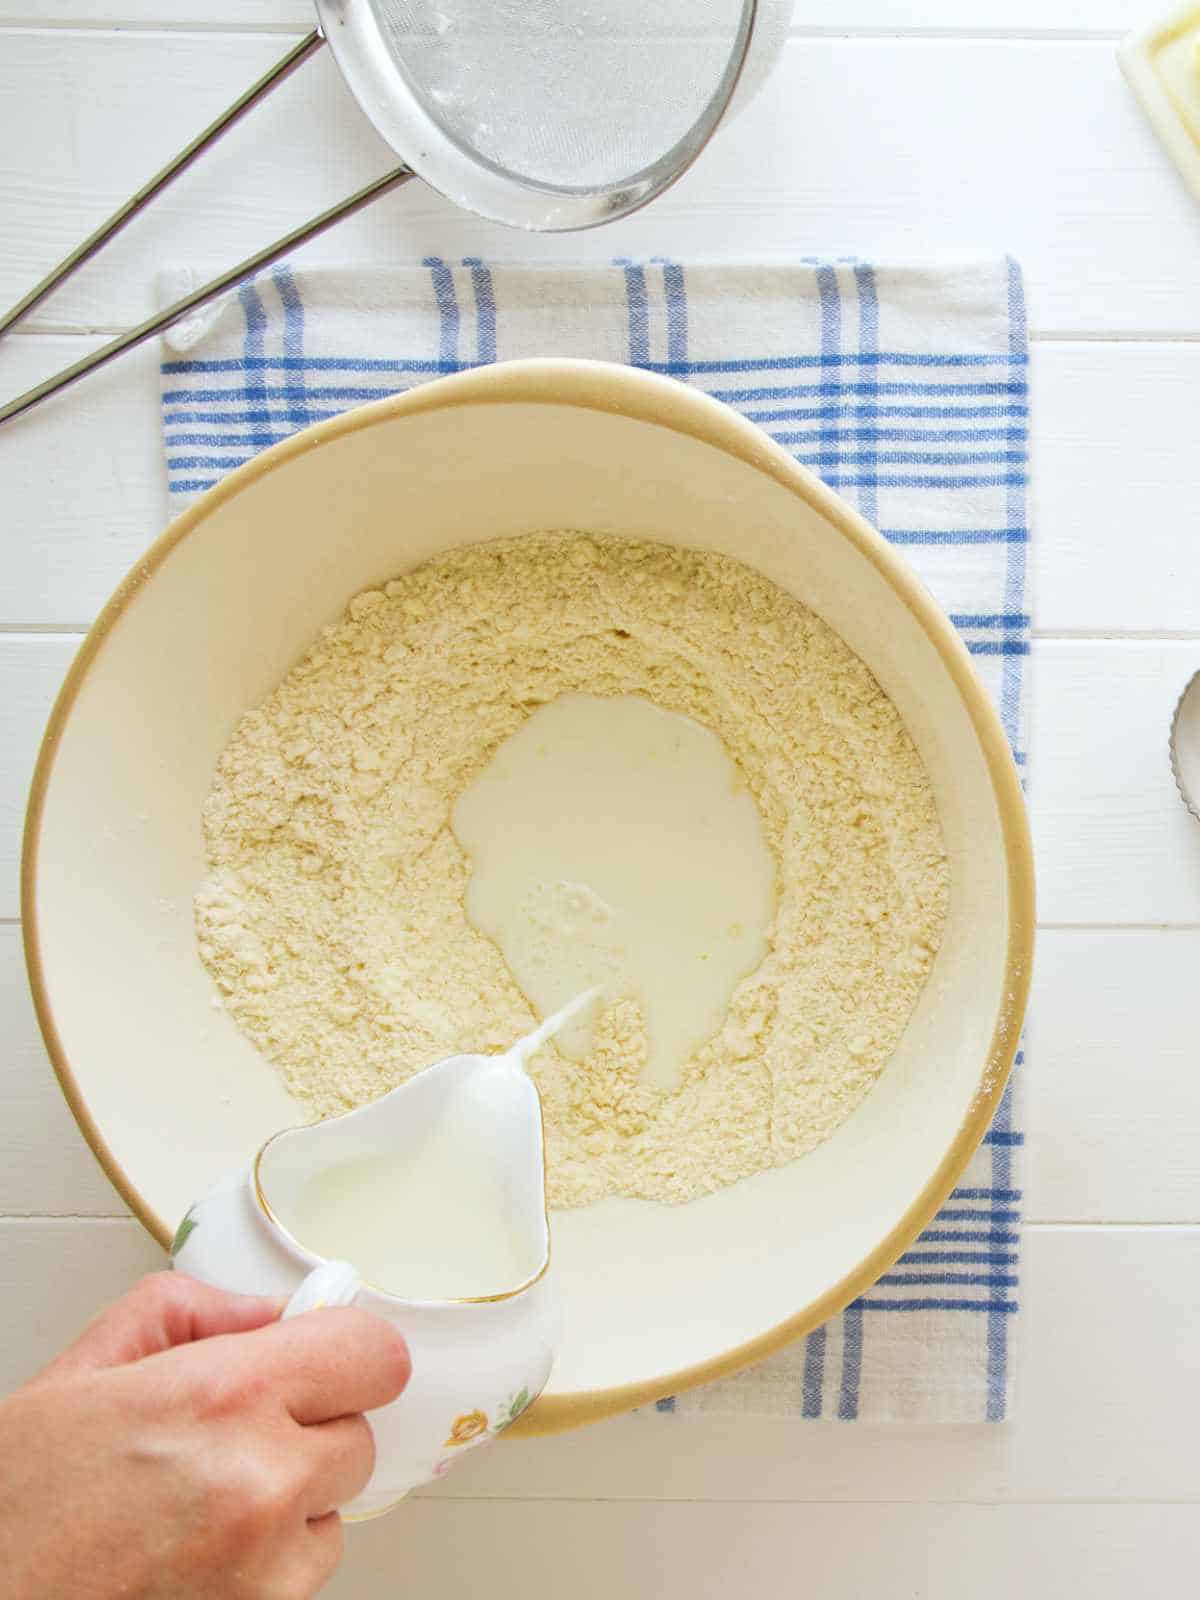 Adding milk to flour mixture.